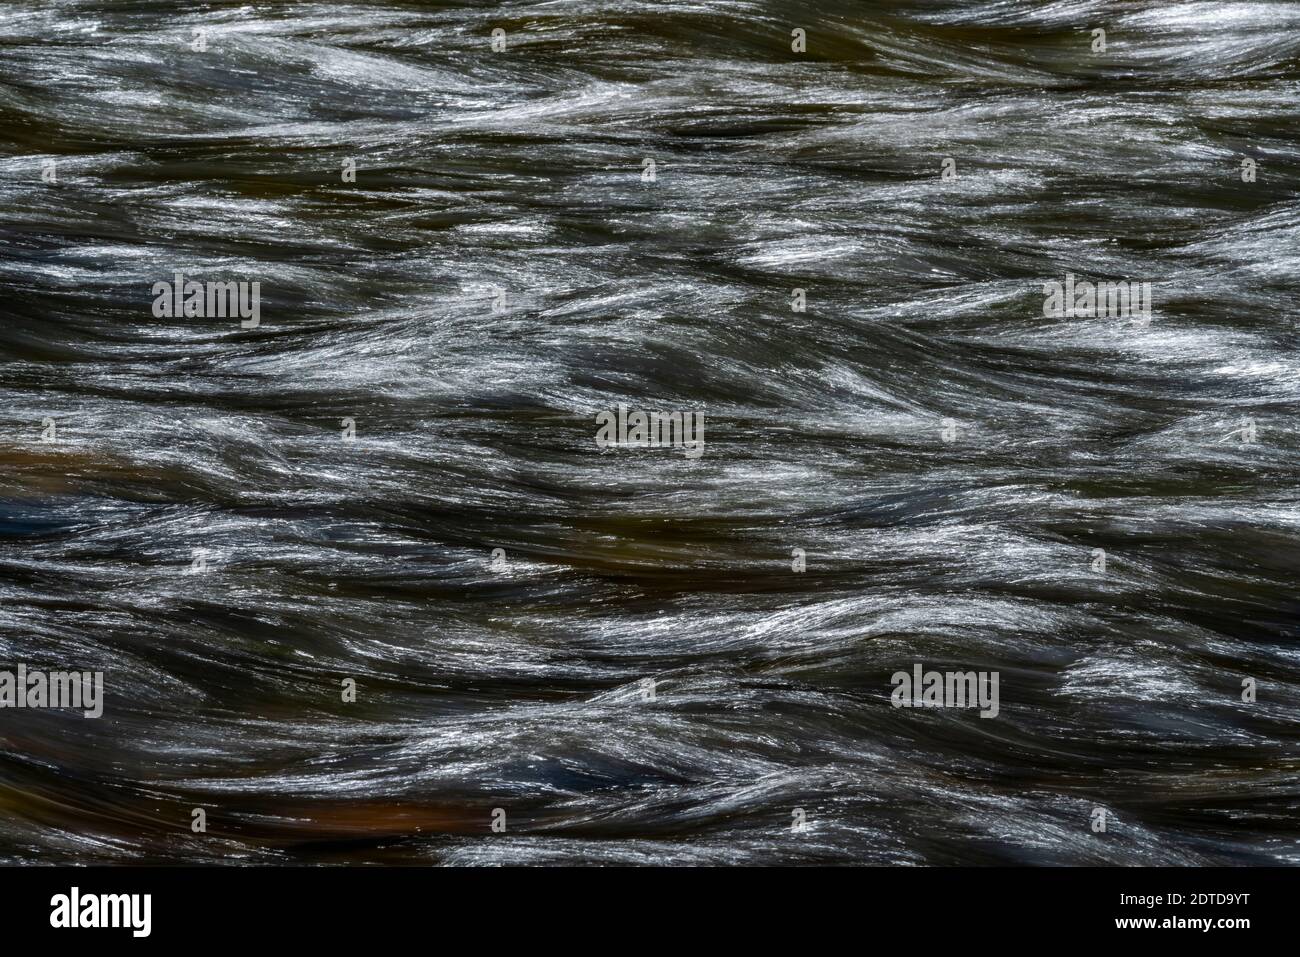 Movimiento agua borrosa del río Salmon Foto de stock